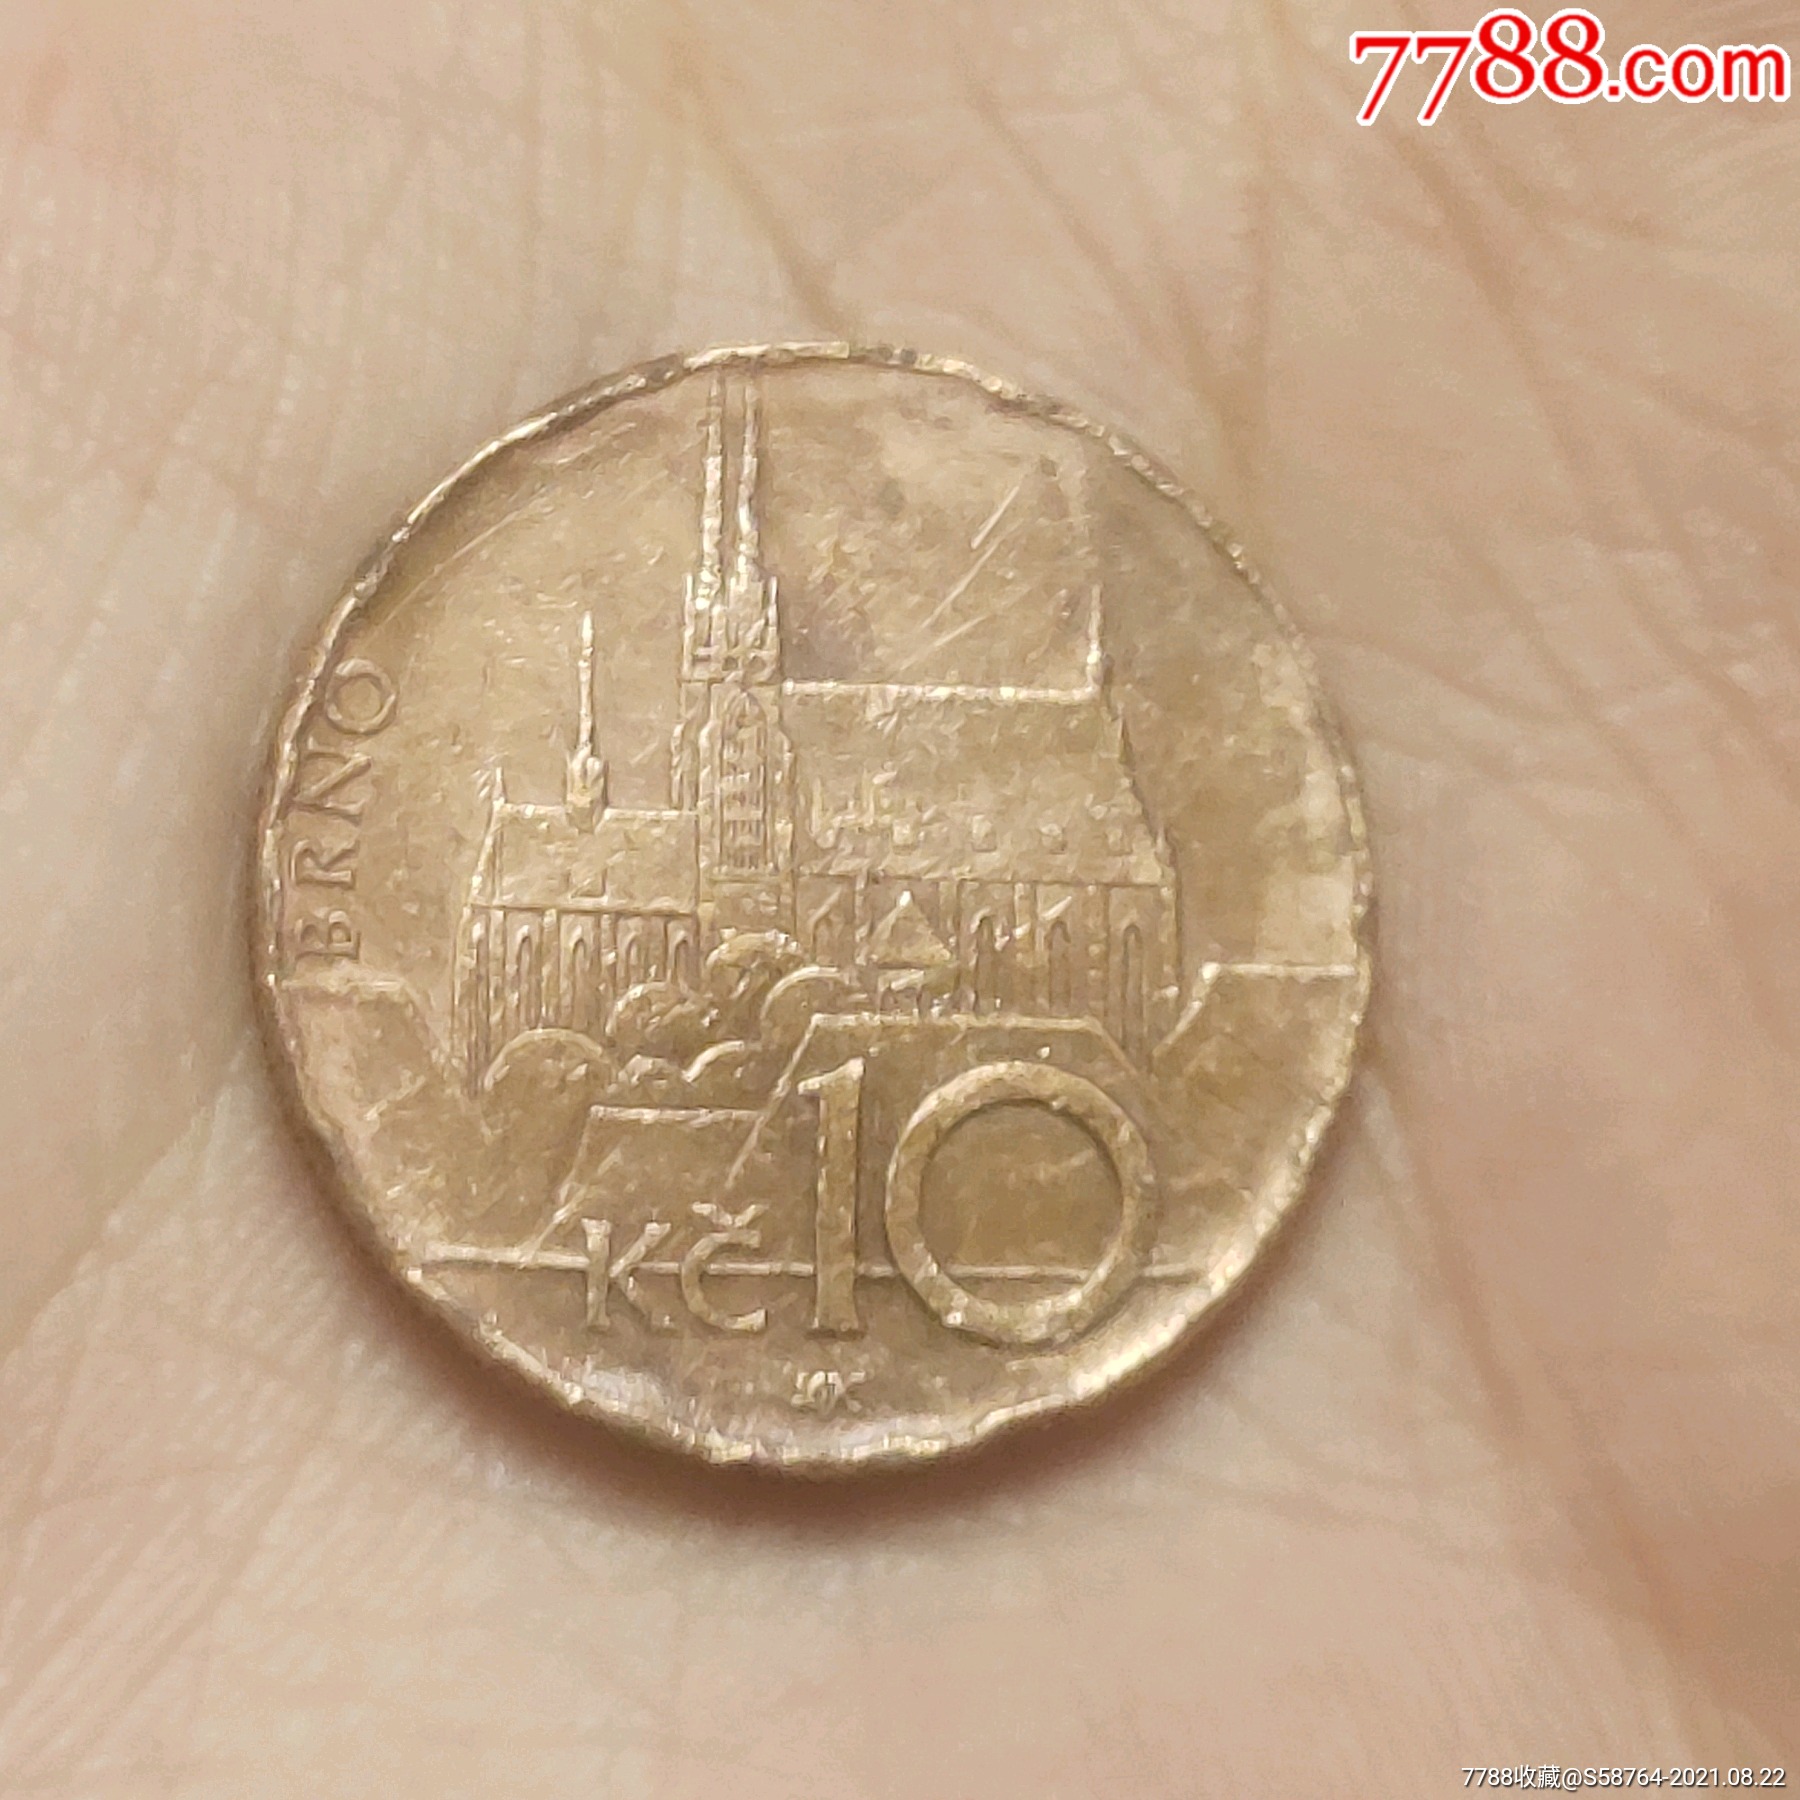 捷克克朗硬币图片